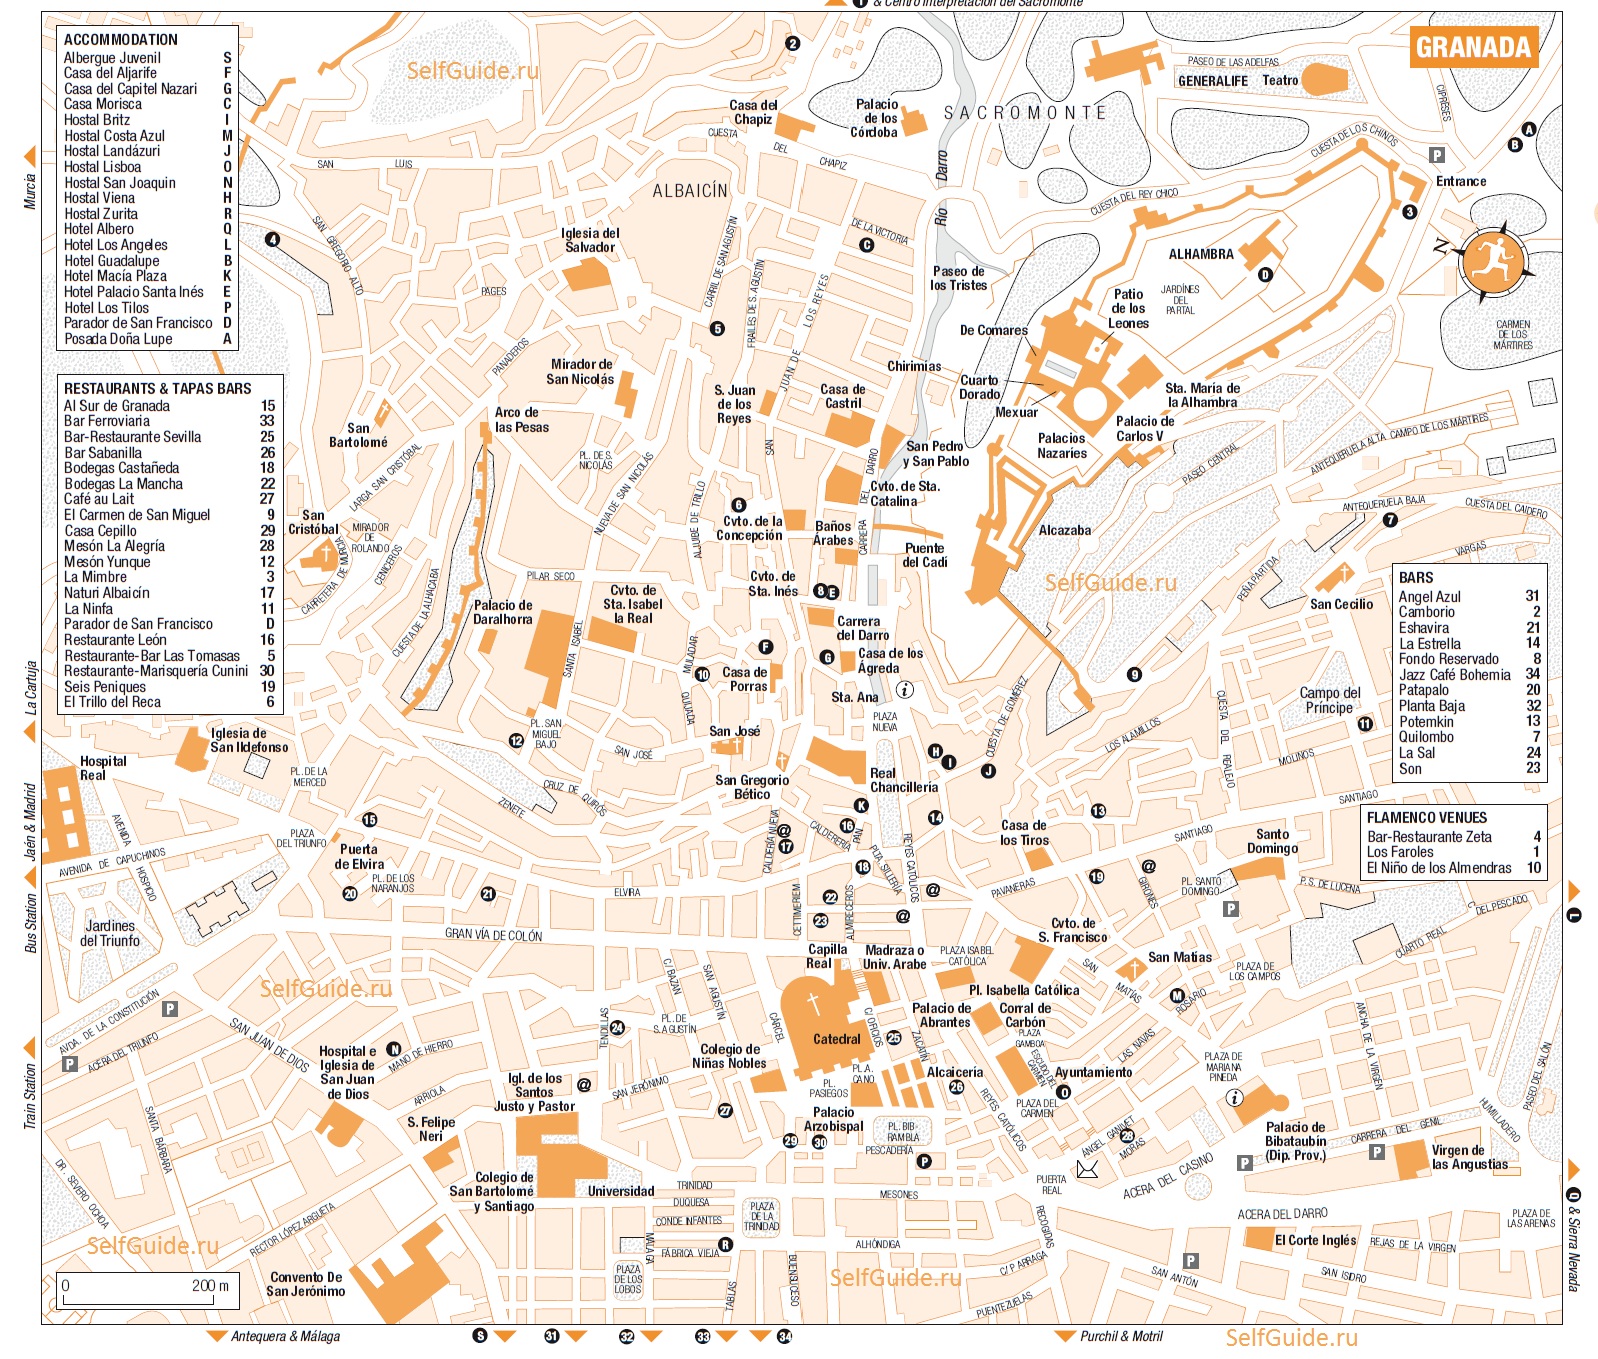 Туристическая карта Гранады c отмеченными достопримечательностями